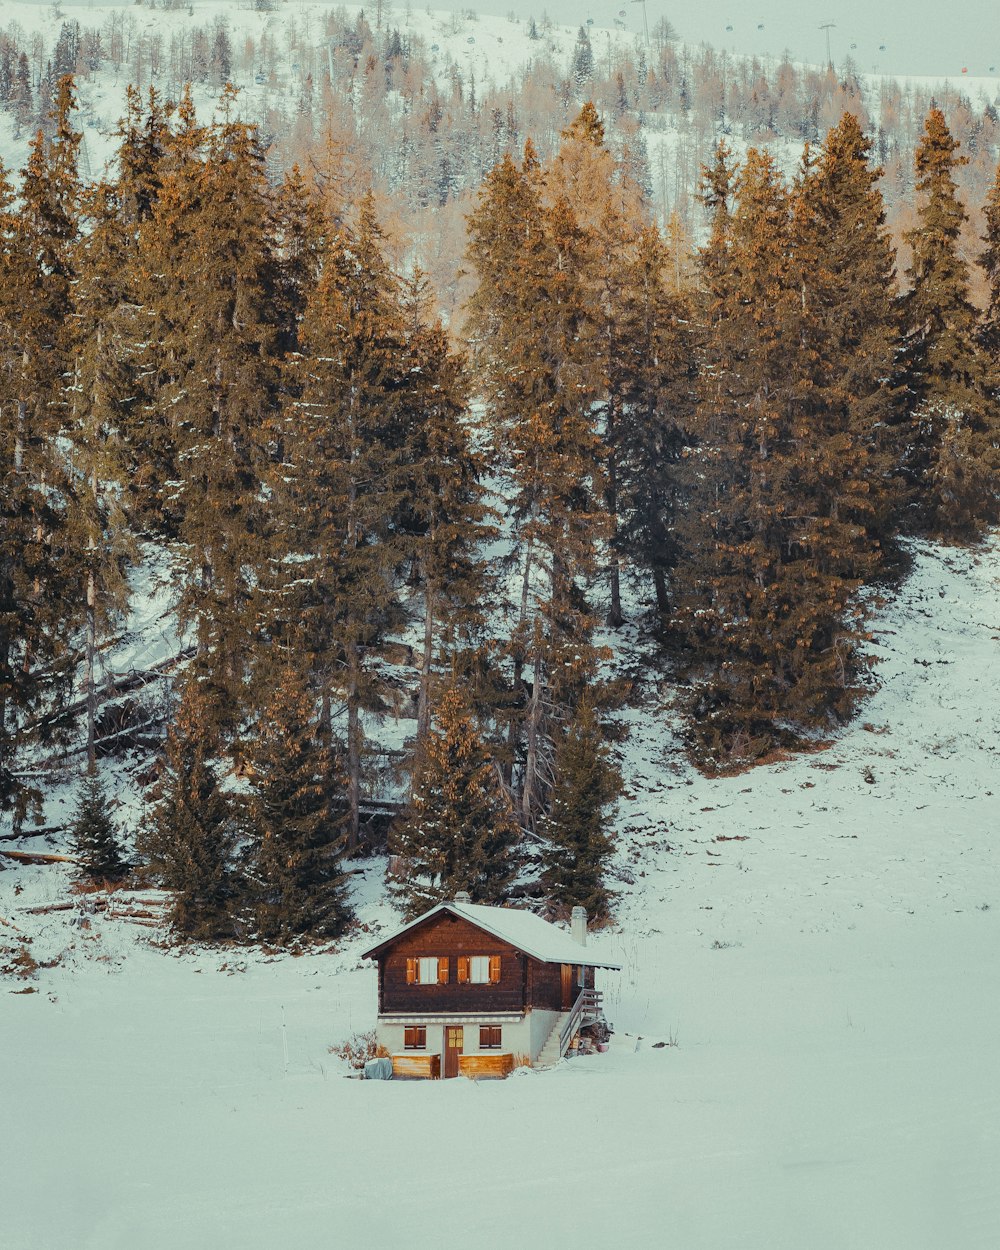 Une cabane au milieu d’une forêt enneigée